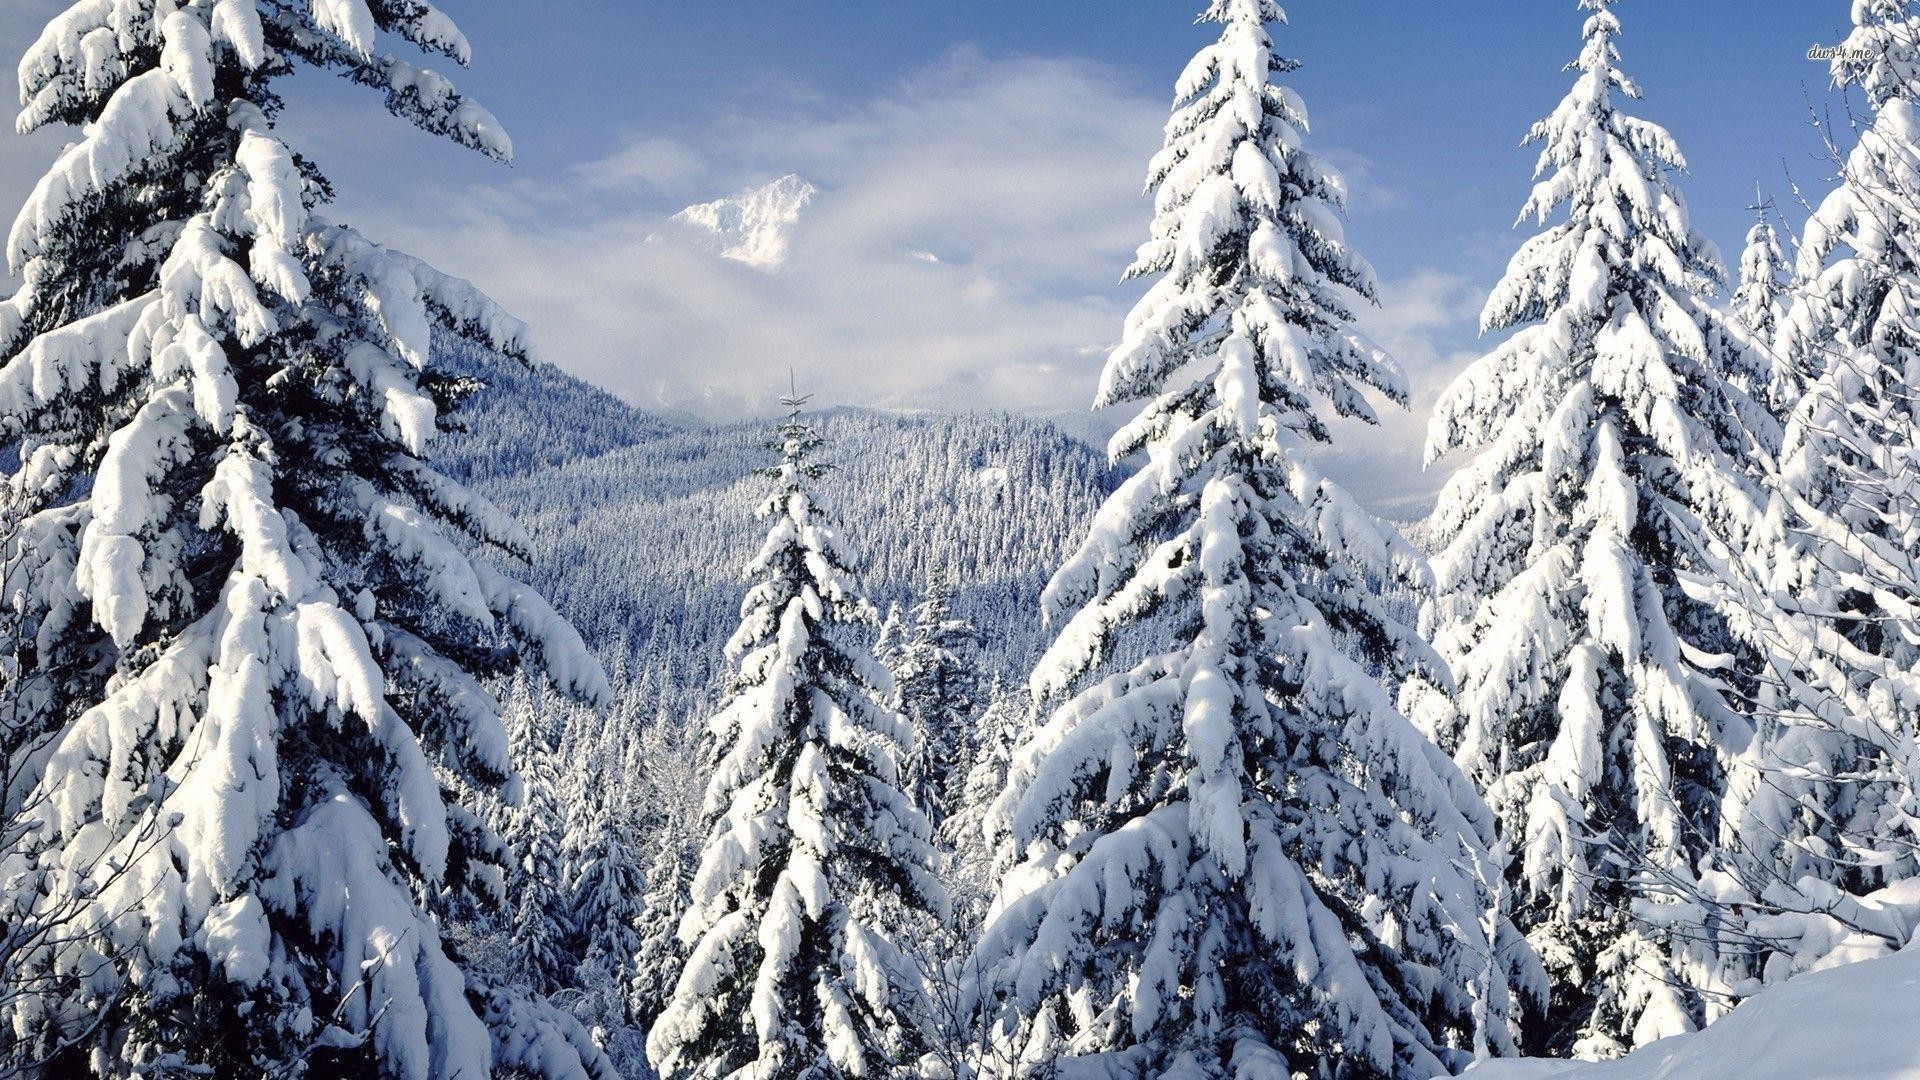 fond d'écran d'arbre de neige,épinette noire à feuilles courtes,neige,arbre,hiver,pin tordu